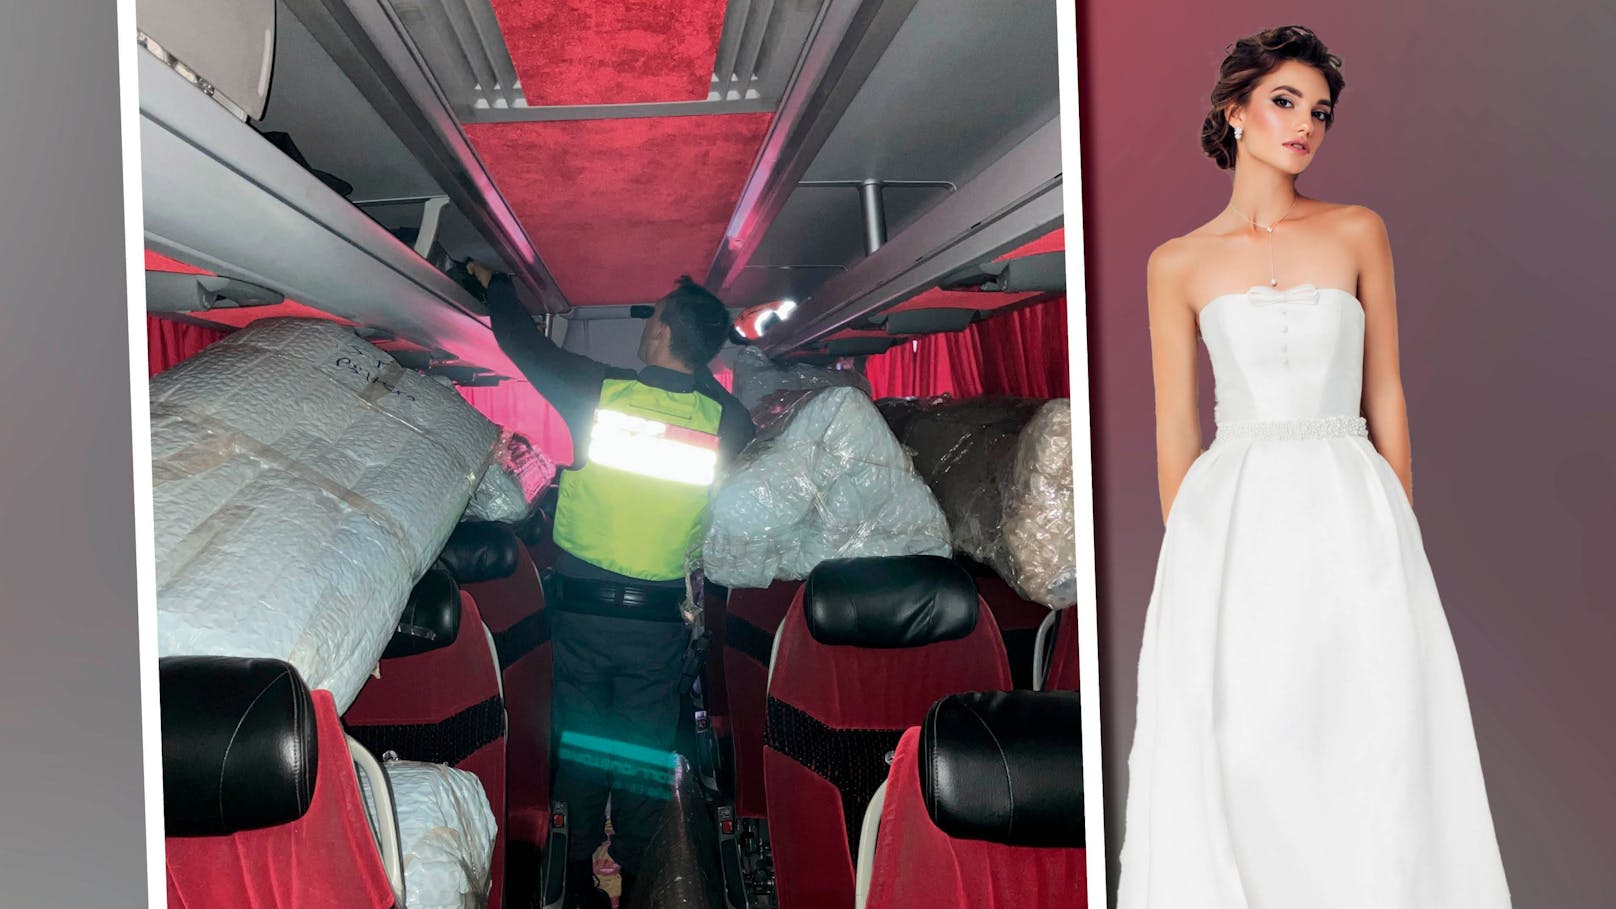 Hochzeitskleider geschmuggelt! Zoll stoppt Türken-Bus